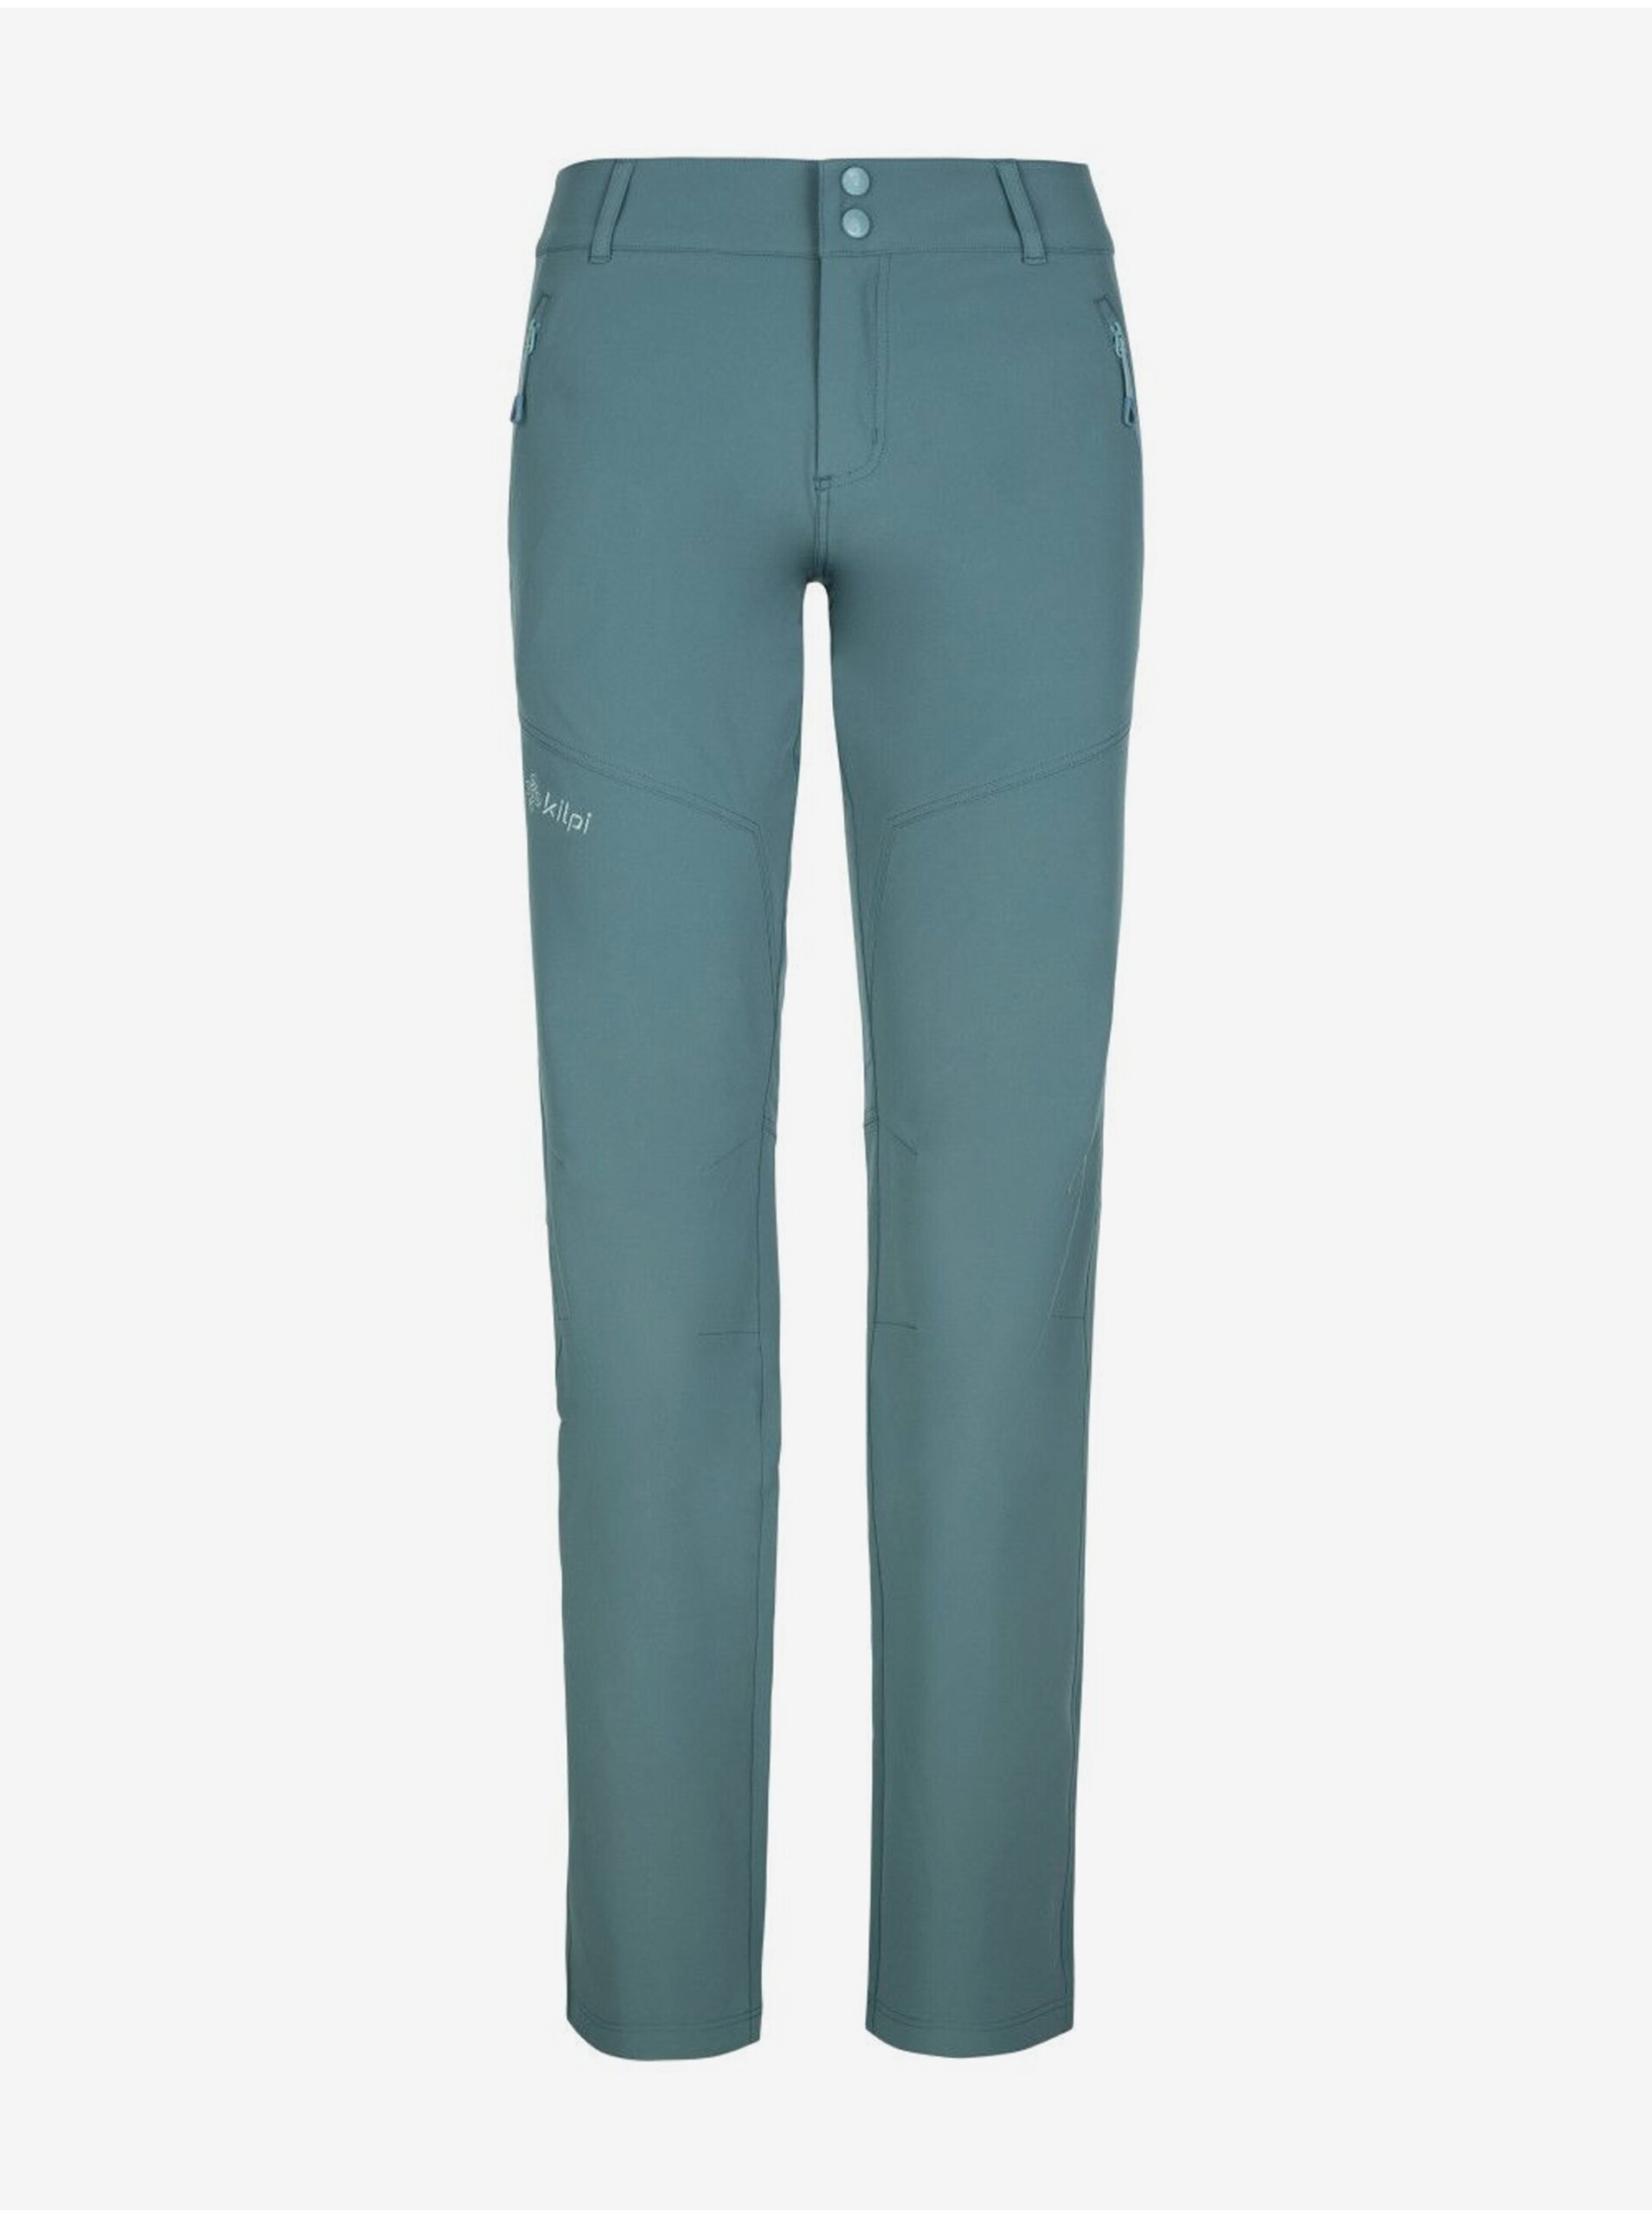 E-shop Petrolejové dámské outdoorové kalhoty Kilpi LAGO